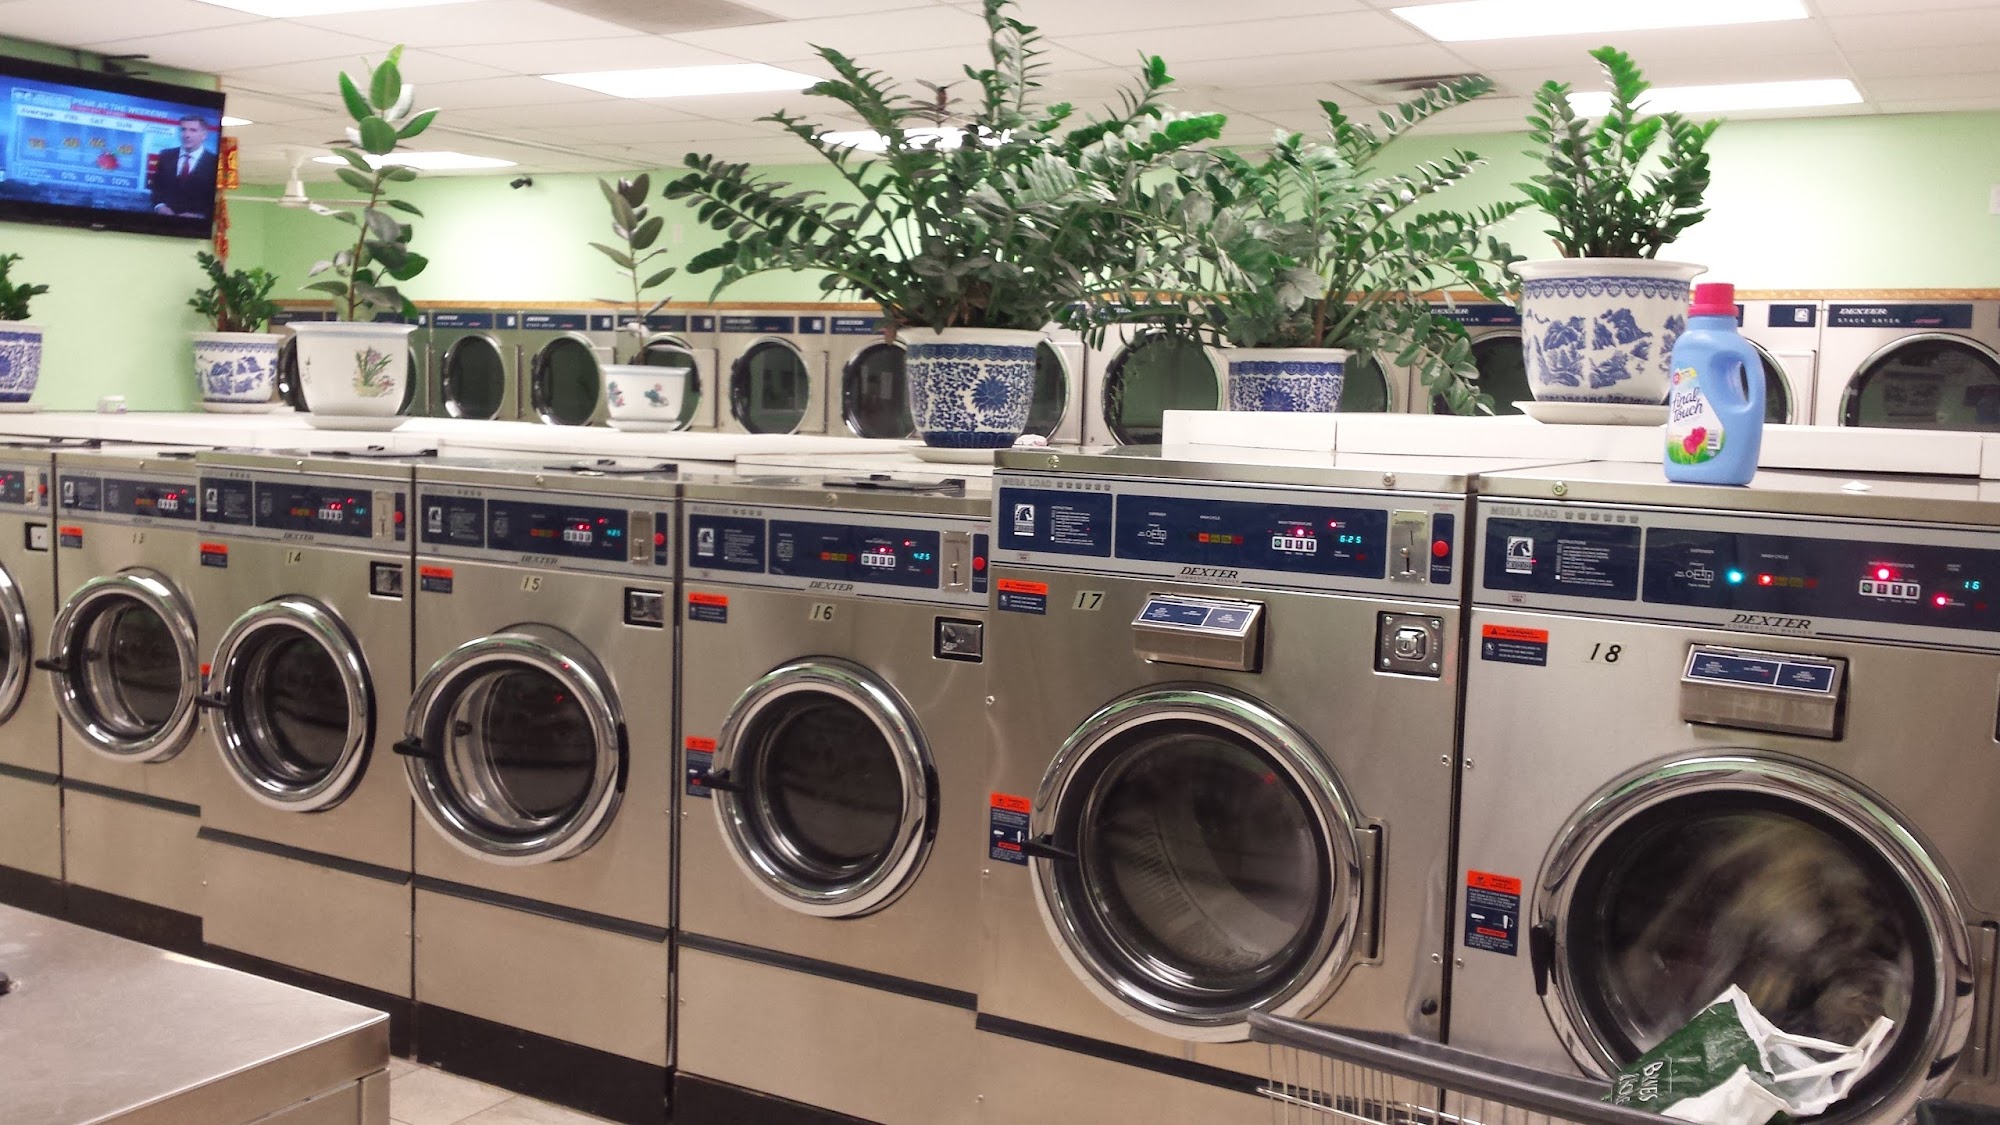 Super Clean Laundromat